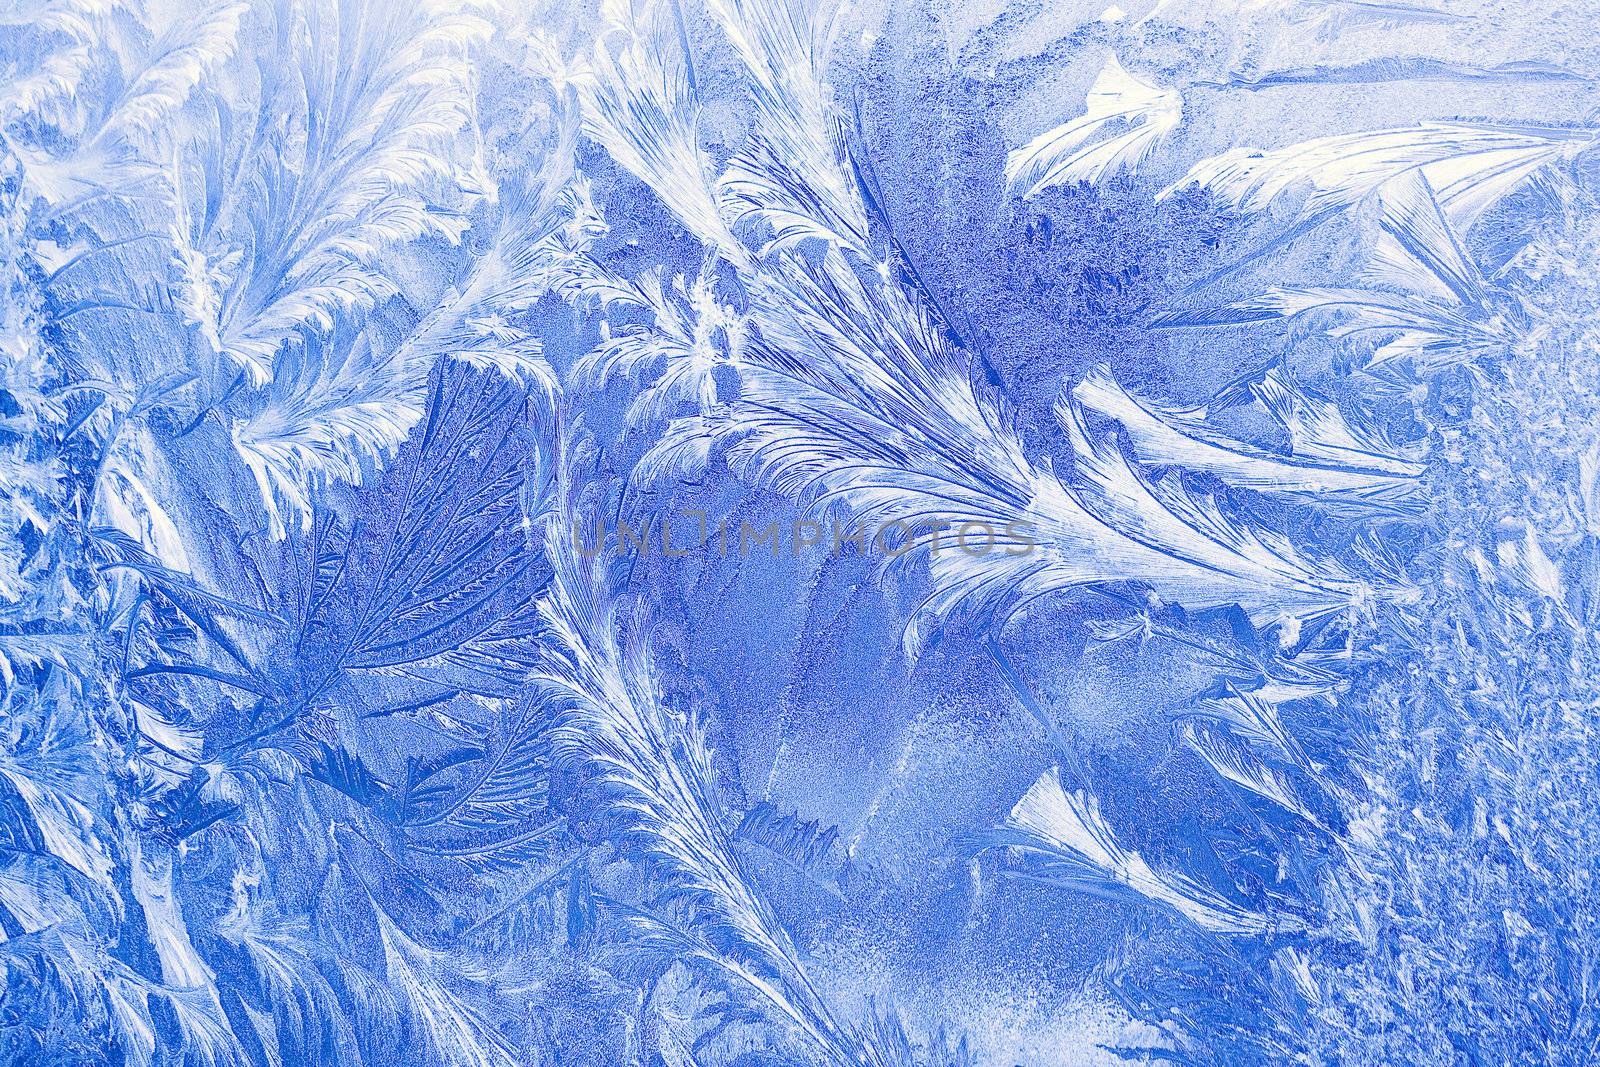 Ice pattern on a window in winter time by gavran333